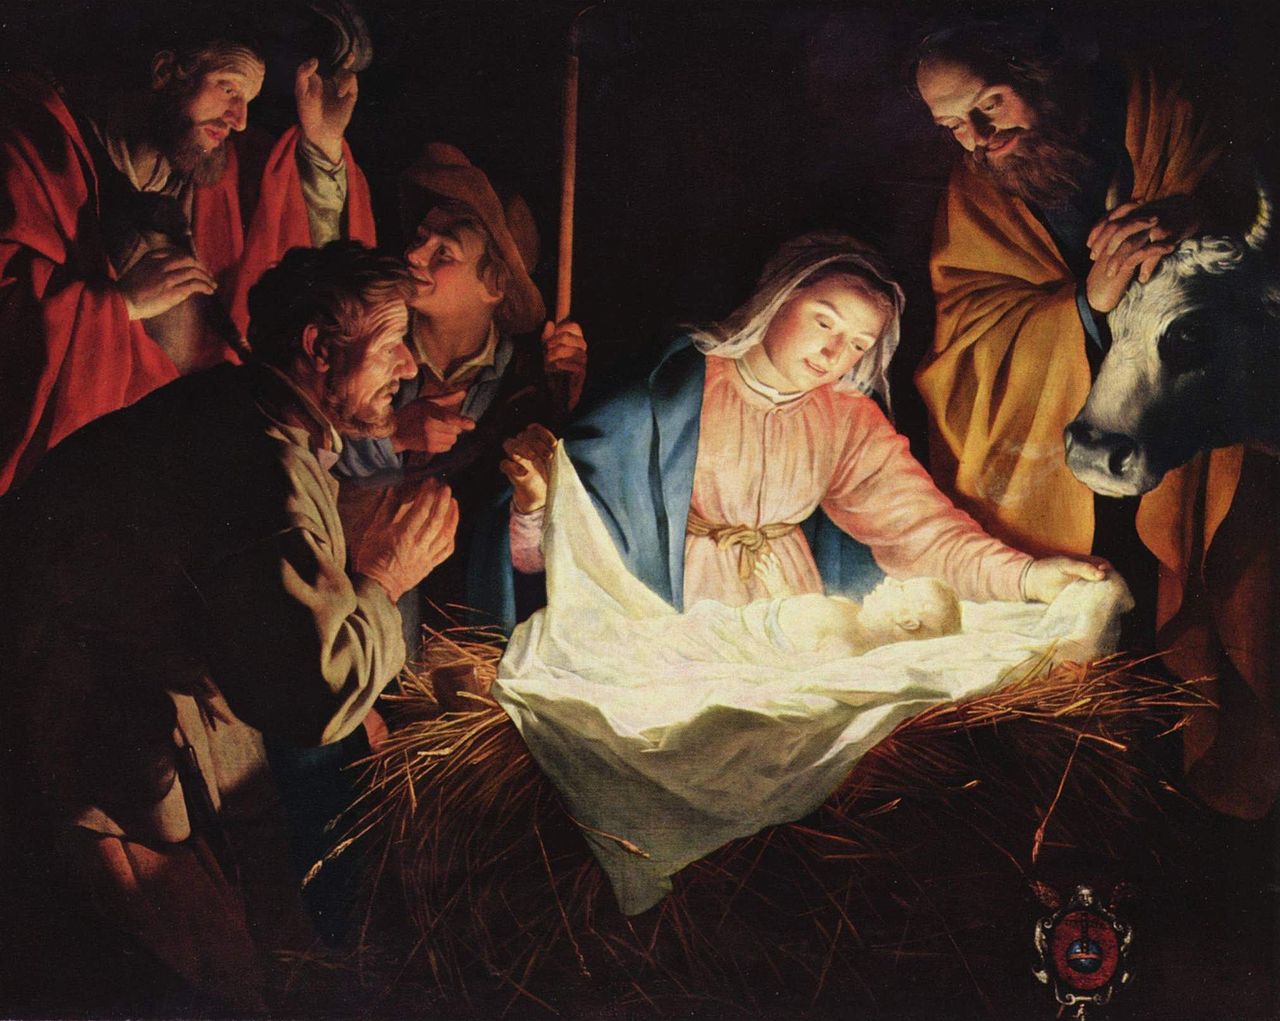 Jezus Chrystus przyszedł na świat 25 grudnia, Jednak historycy mają wątpliwości i że Jezus urodził się kilka lat wcześniej i być może wiosną, a nie zimą.